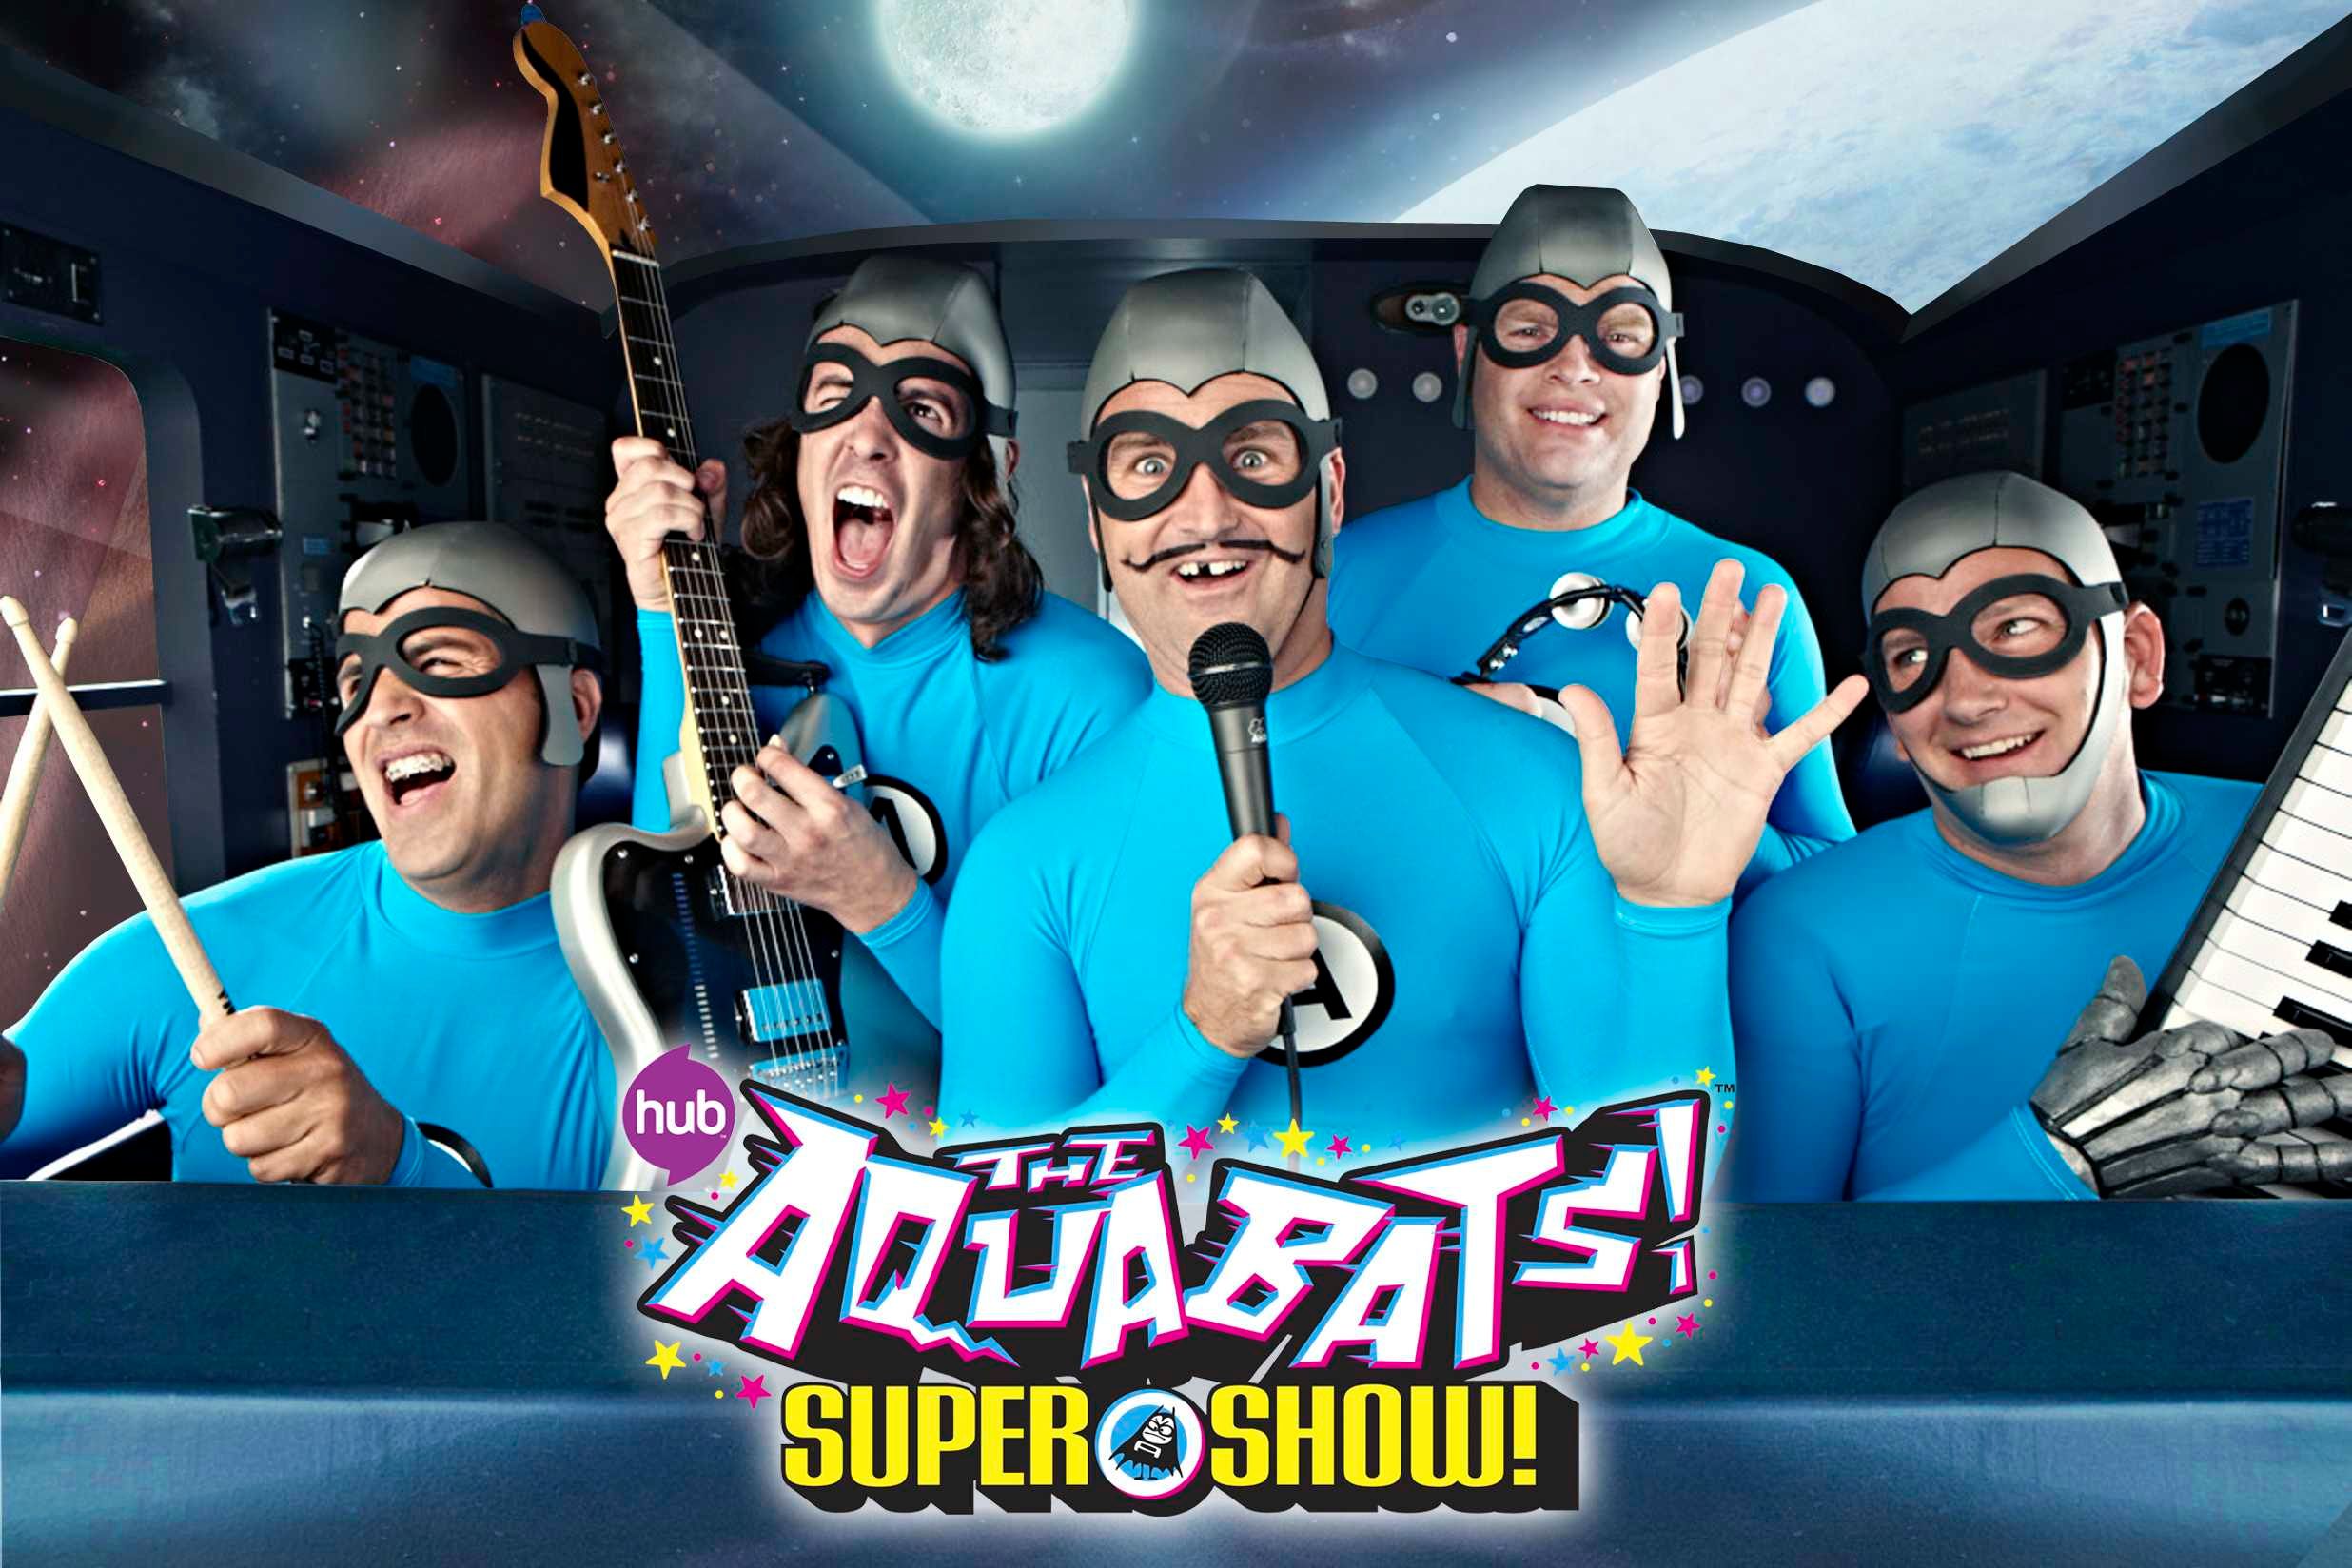 The Aquabats! Super Show! Promo #2